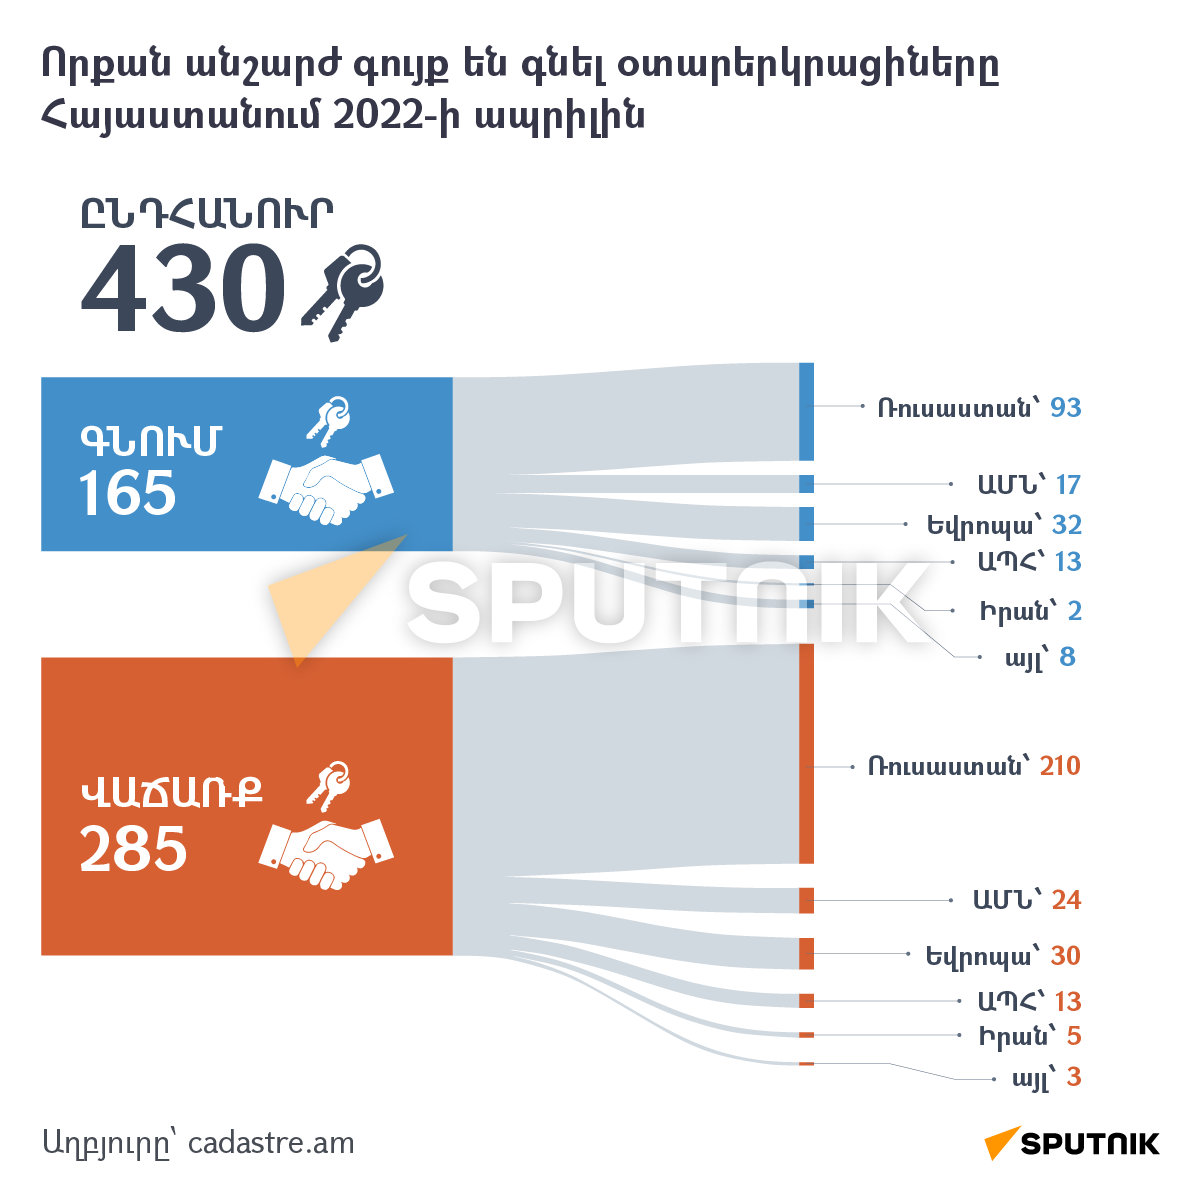 Որքան անշարժ գույք են գնել օտարերկրացիները Հայաստանում 2022-ի ապրիլին - Sputnik Արմենիա